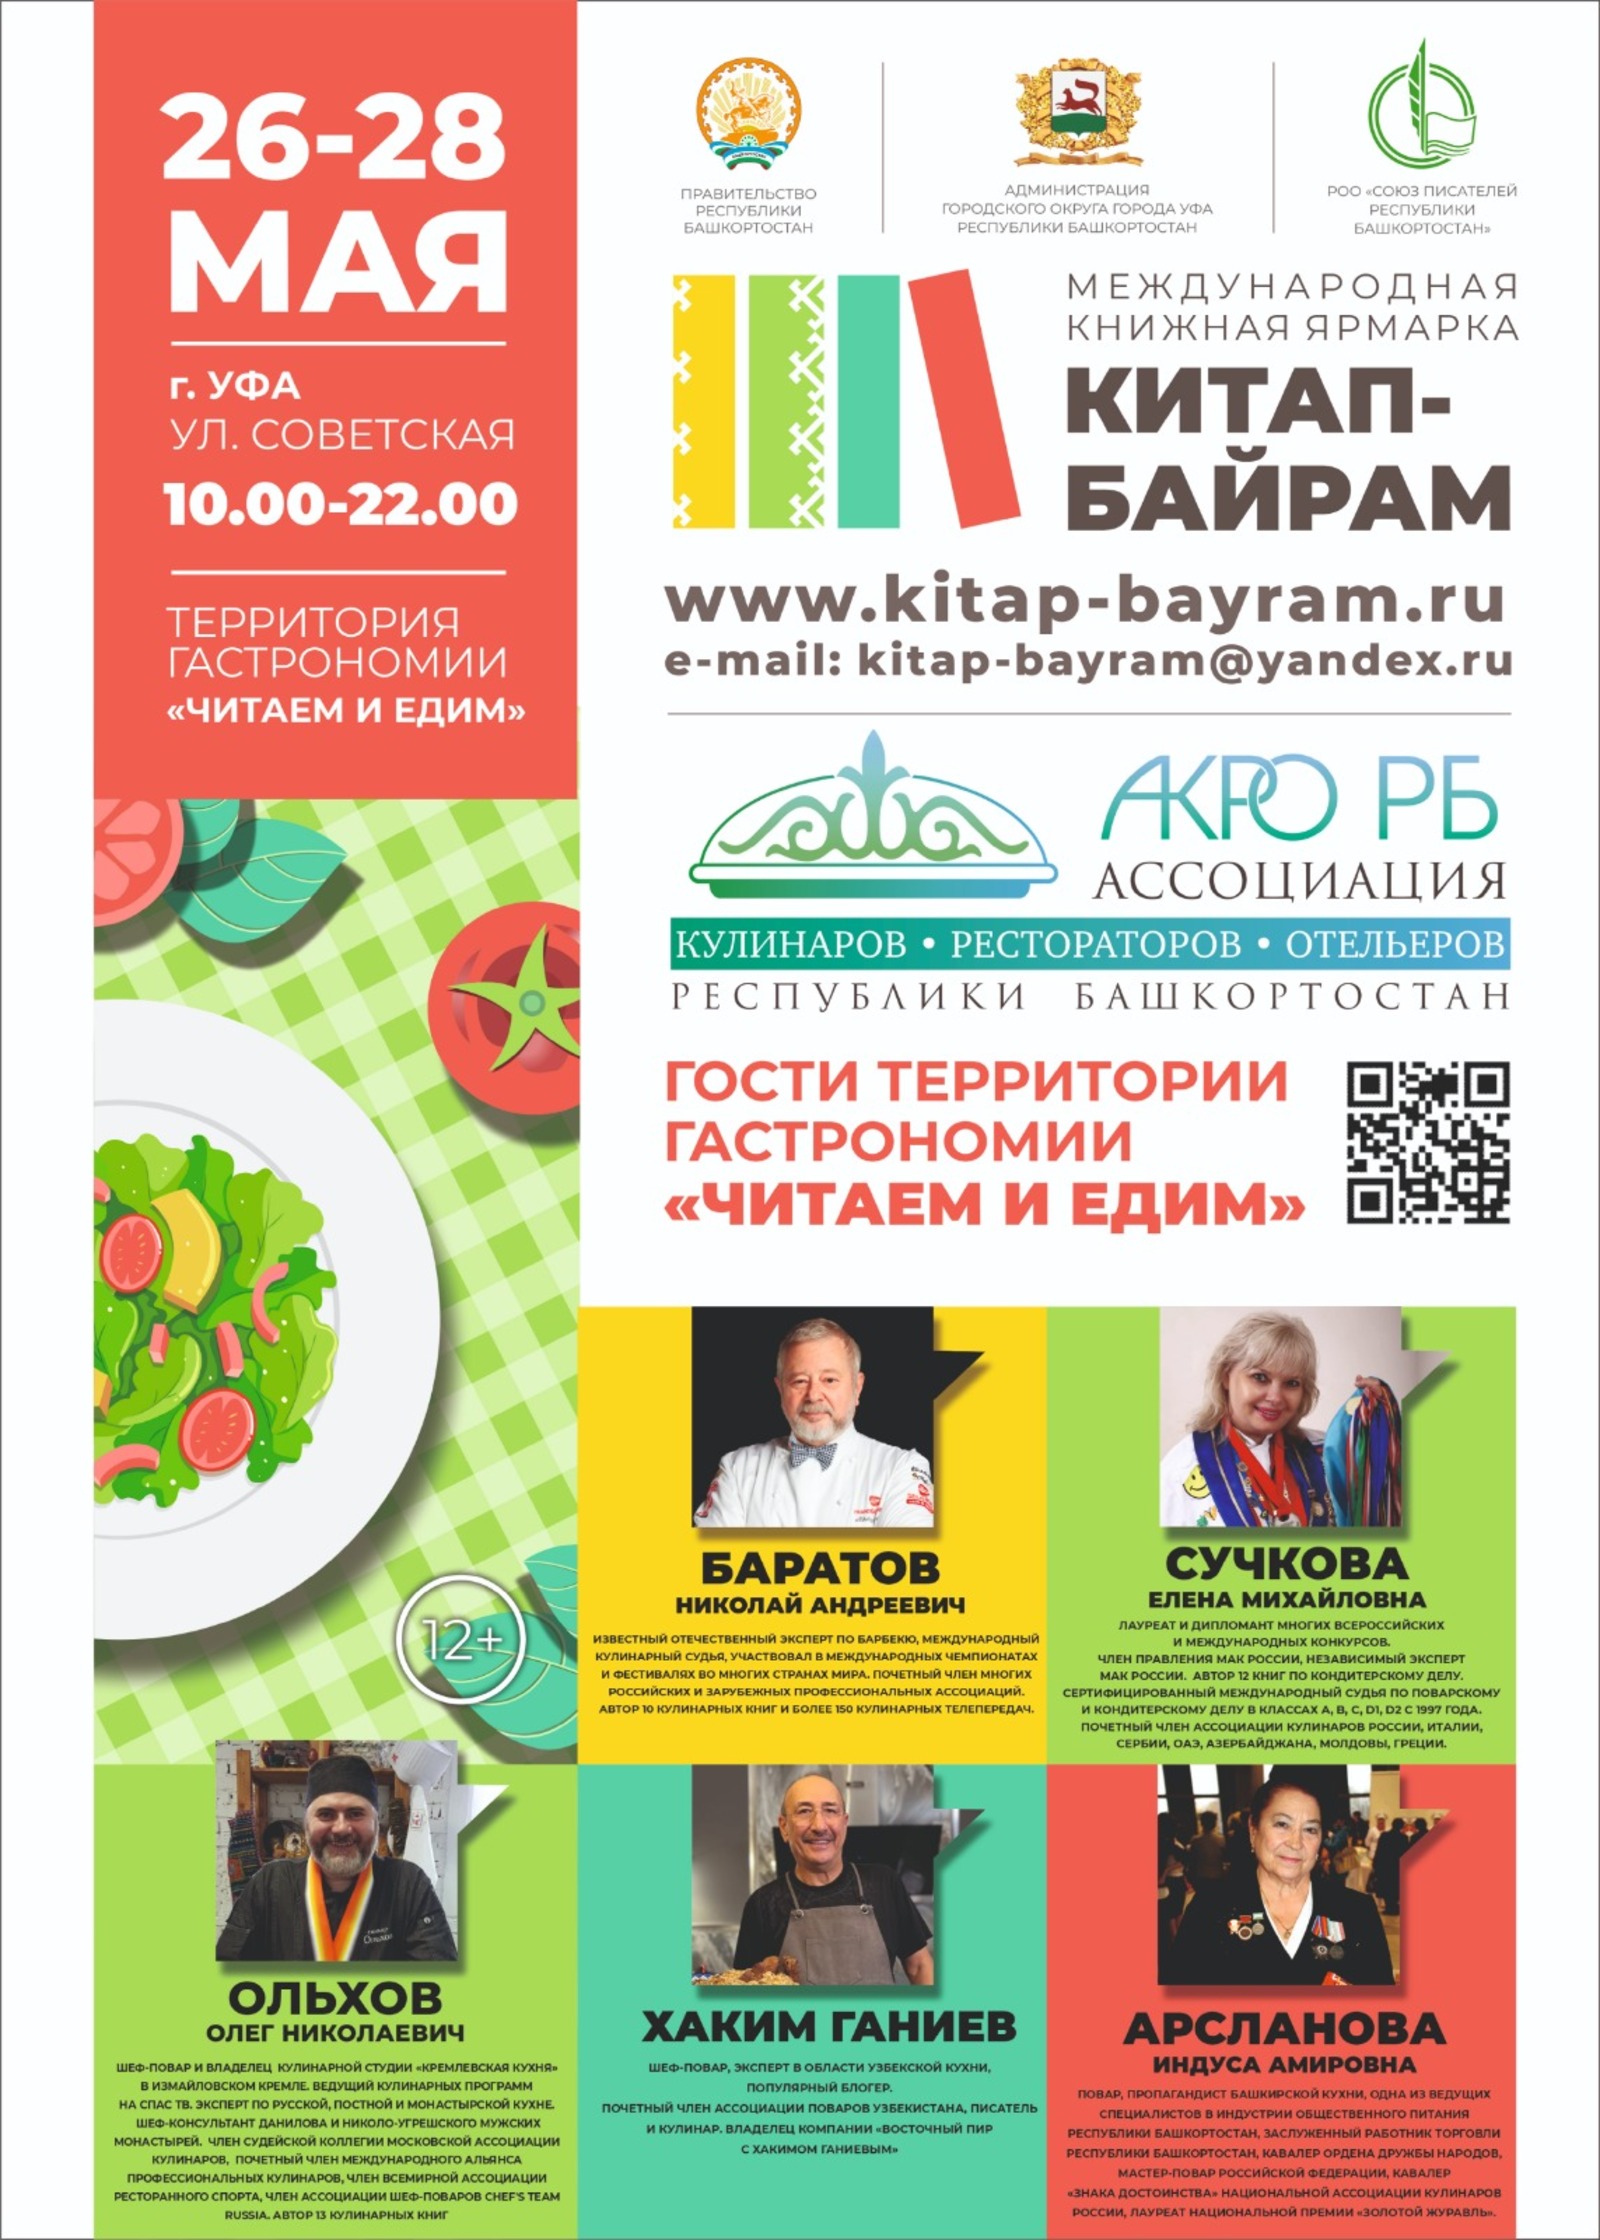 В Башкирской столице состоится  Международная книжная ярмарка  "Китап-Байрам"